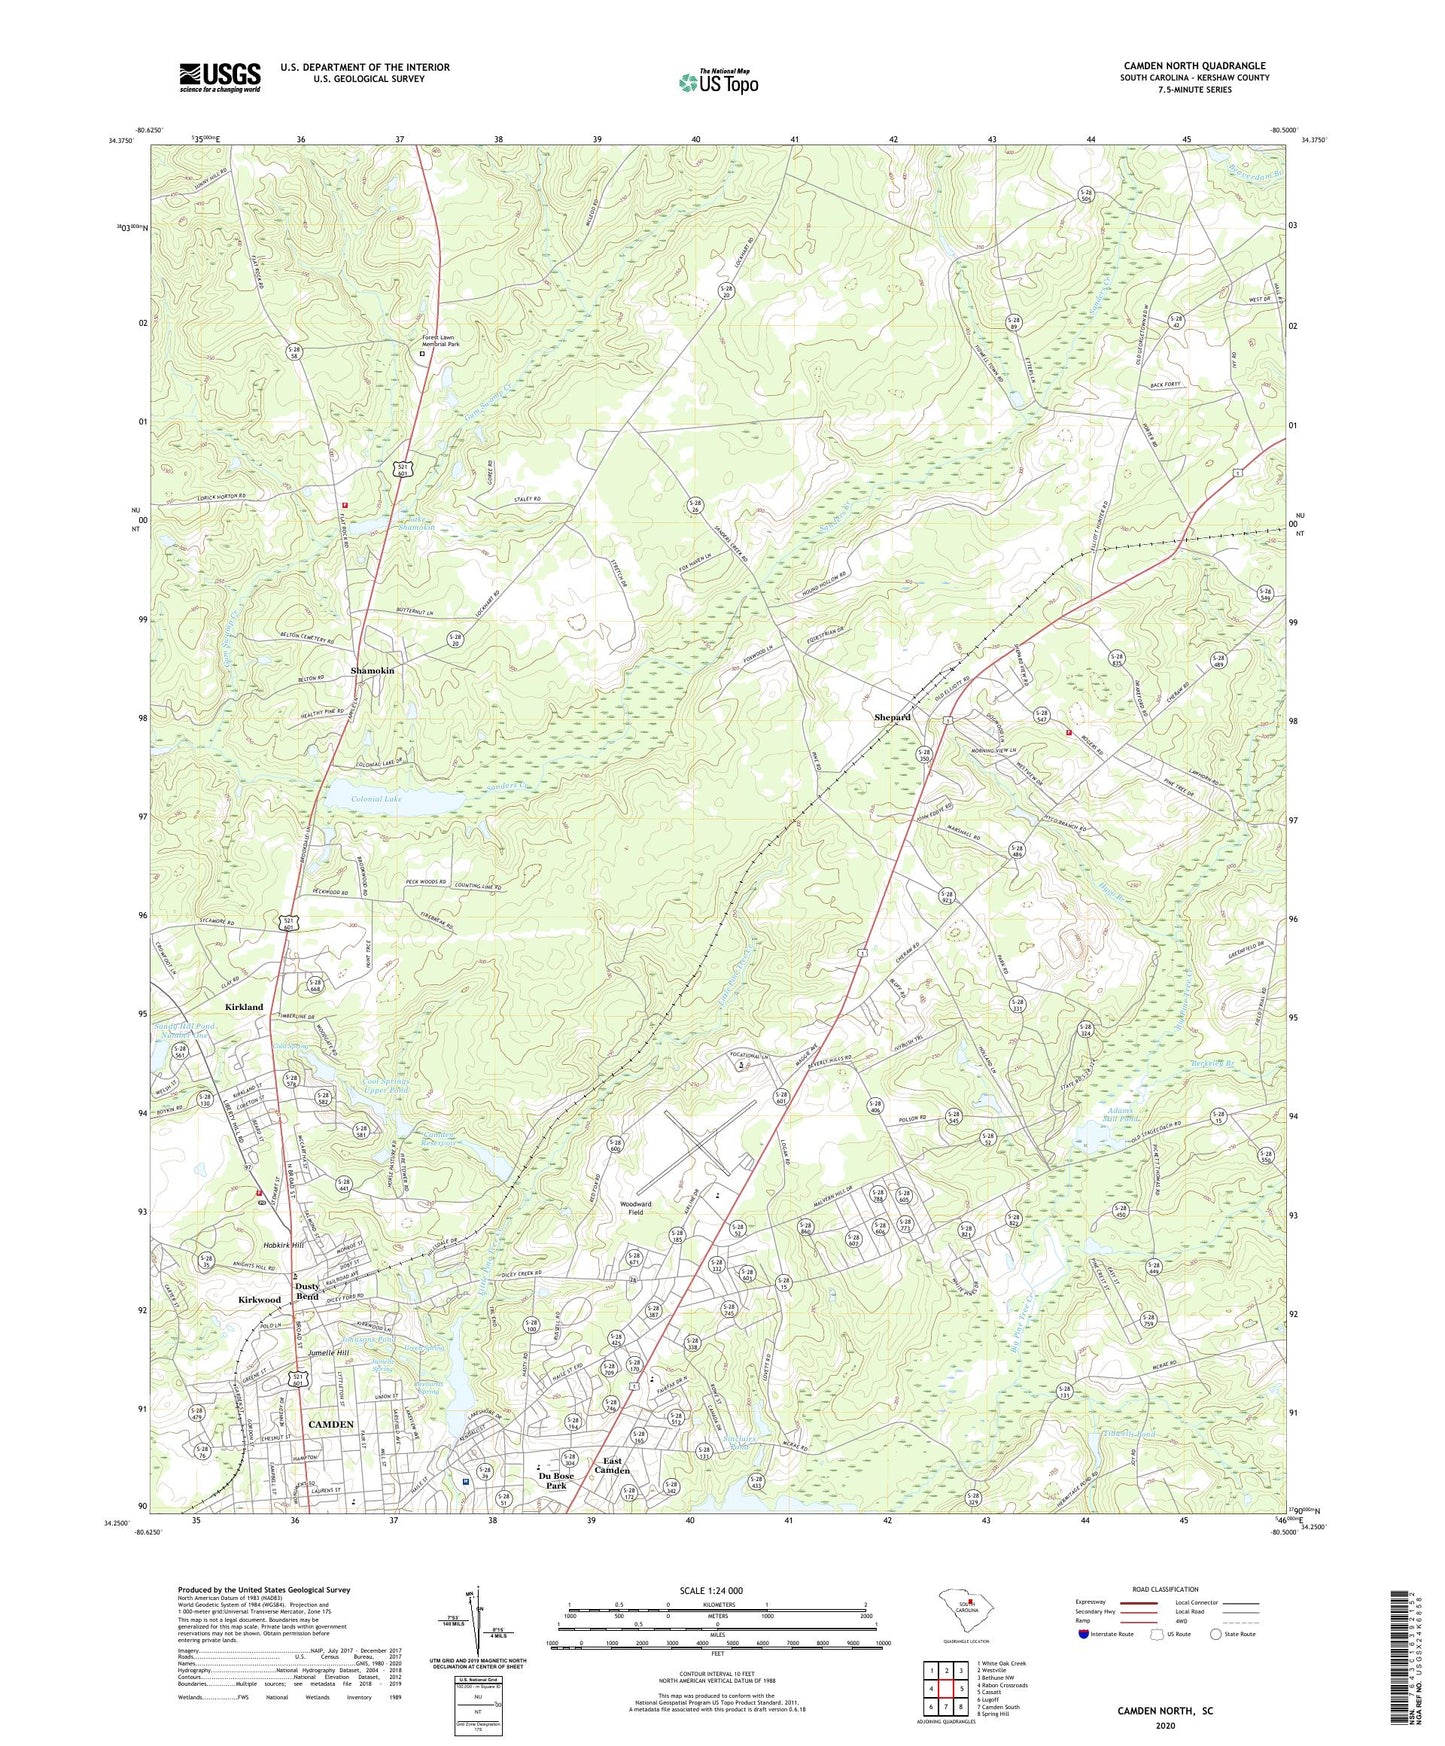 Camden North South Carolina US Topo Map Image